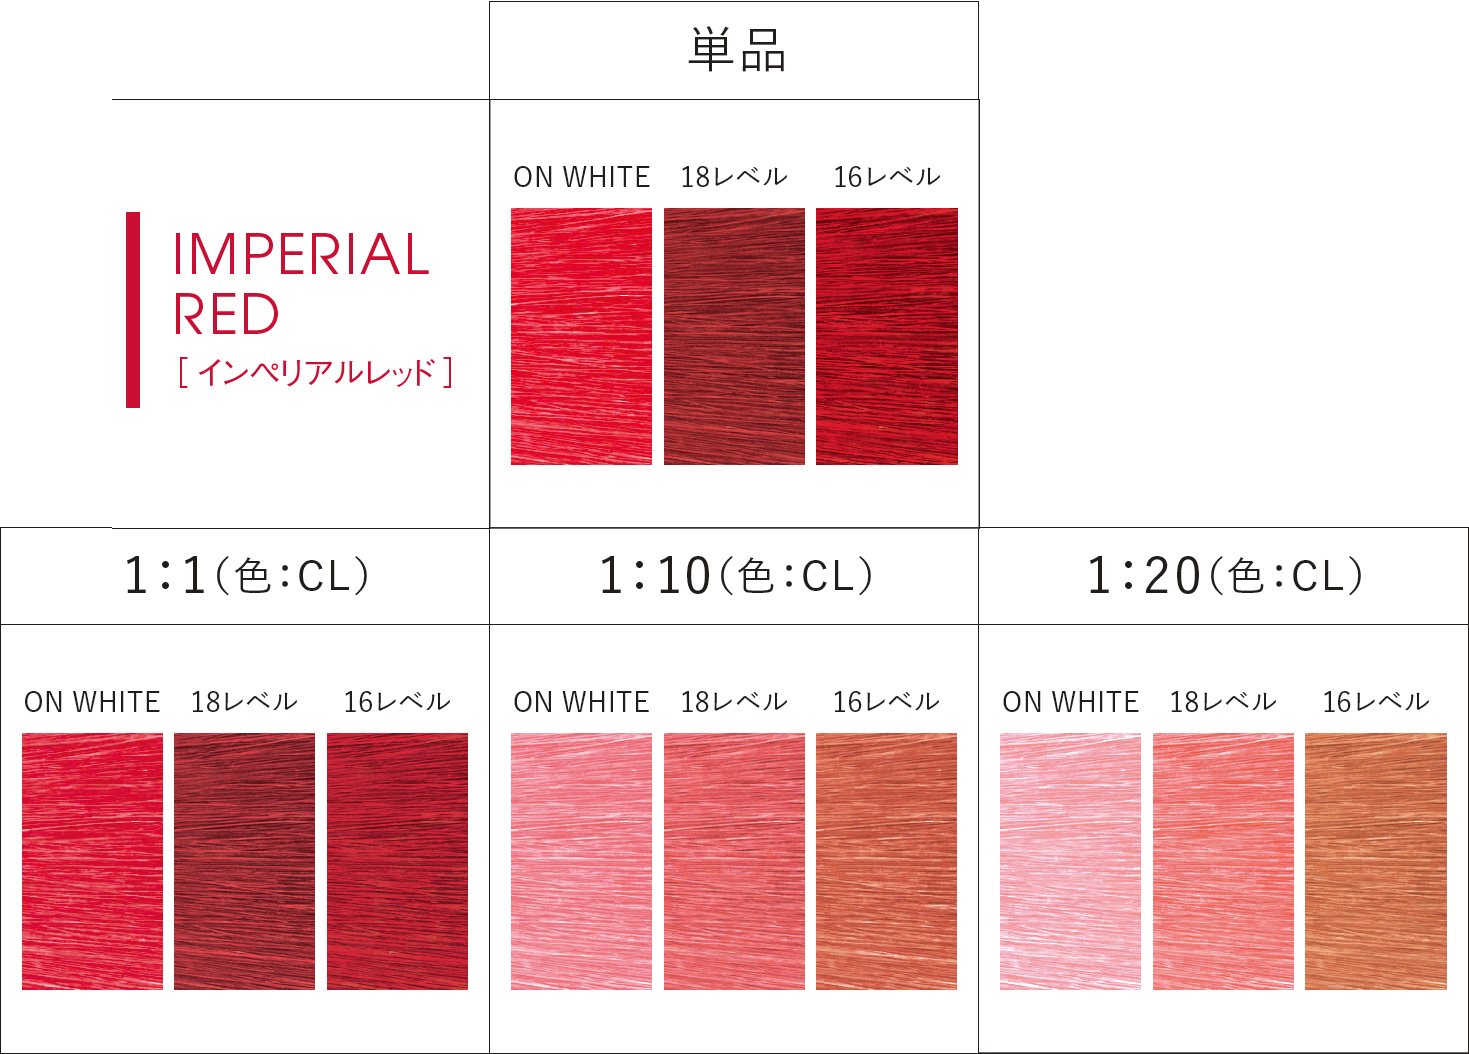 IMPERIAL RED(インペリアルレッド)
インパクト抜群な鮮やかさで力強いレッド。